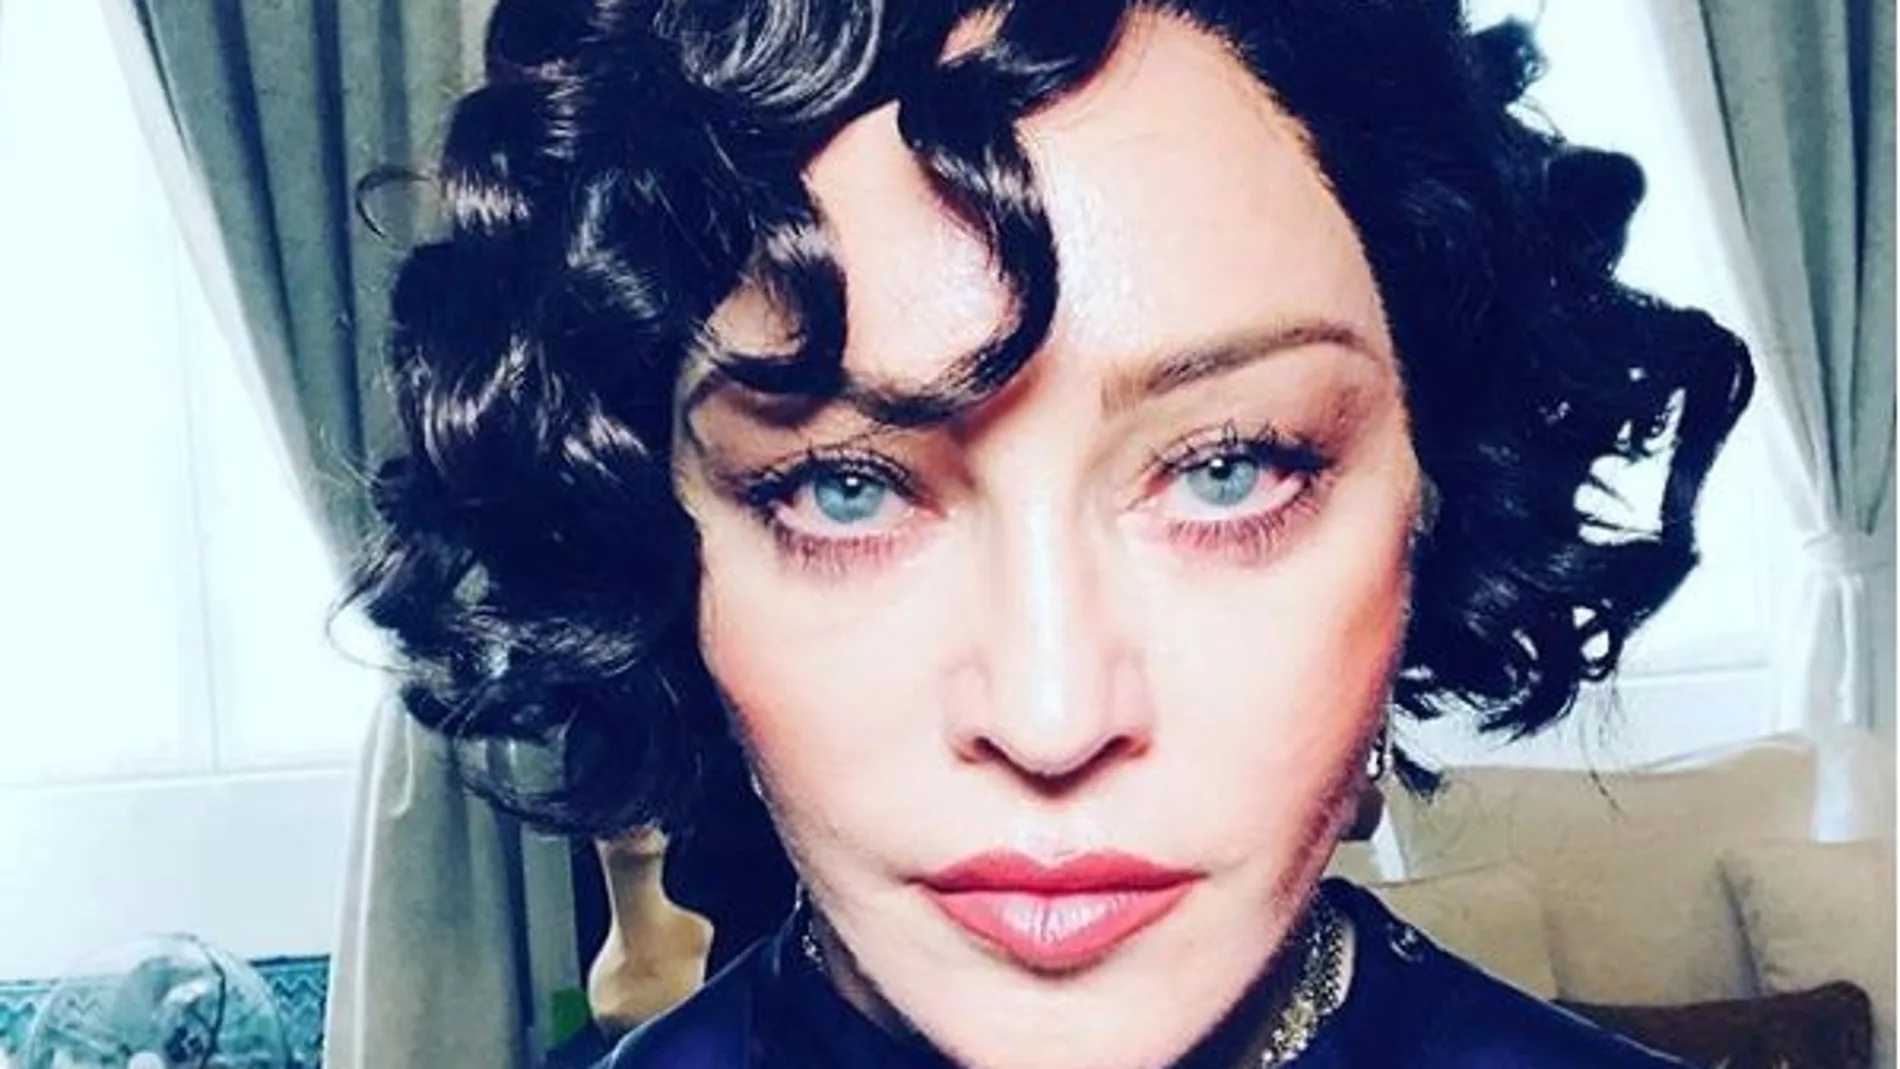 La popular cantante Madonna ha cambiado radicalmente su look / Instagram